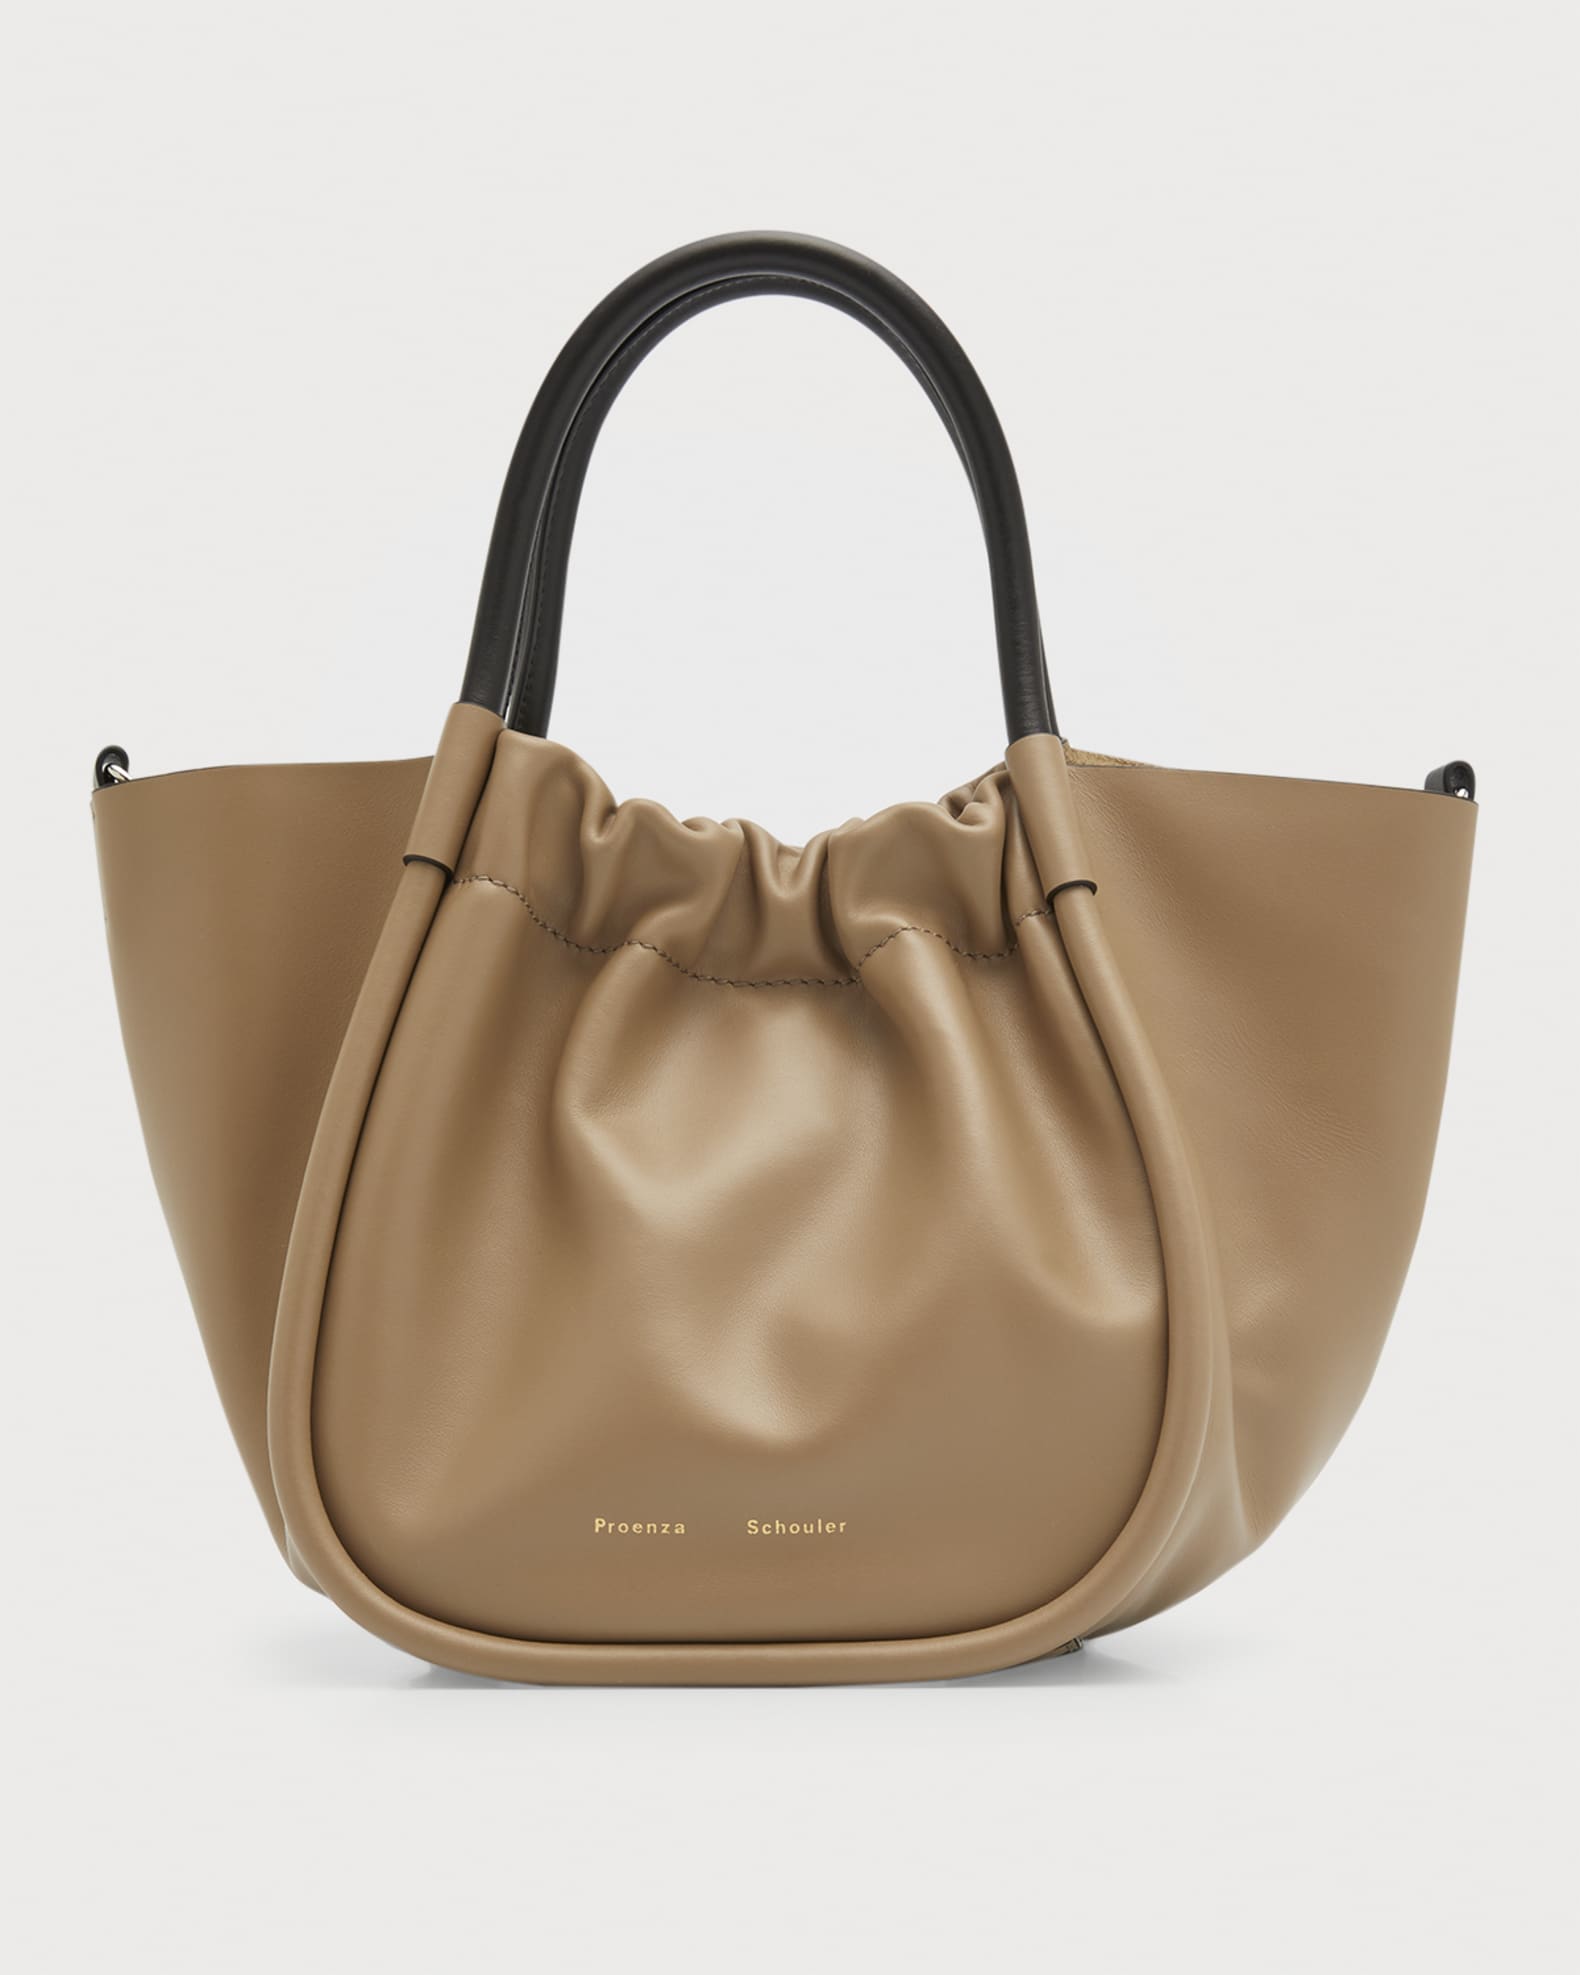 Proenza Schouler Ruched Top Handle Tote Bag | Neiman Marcus